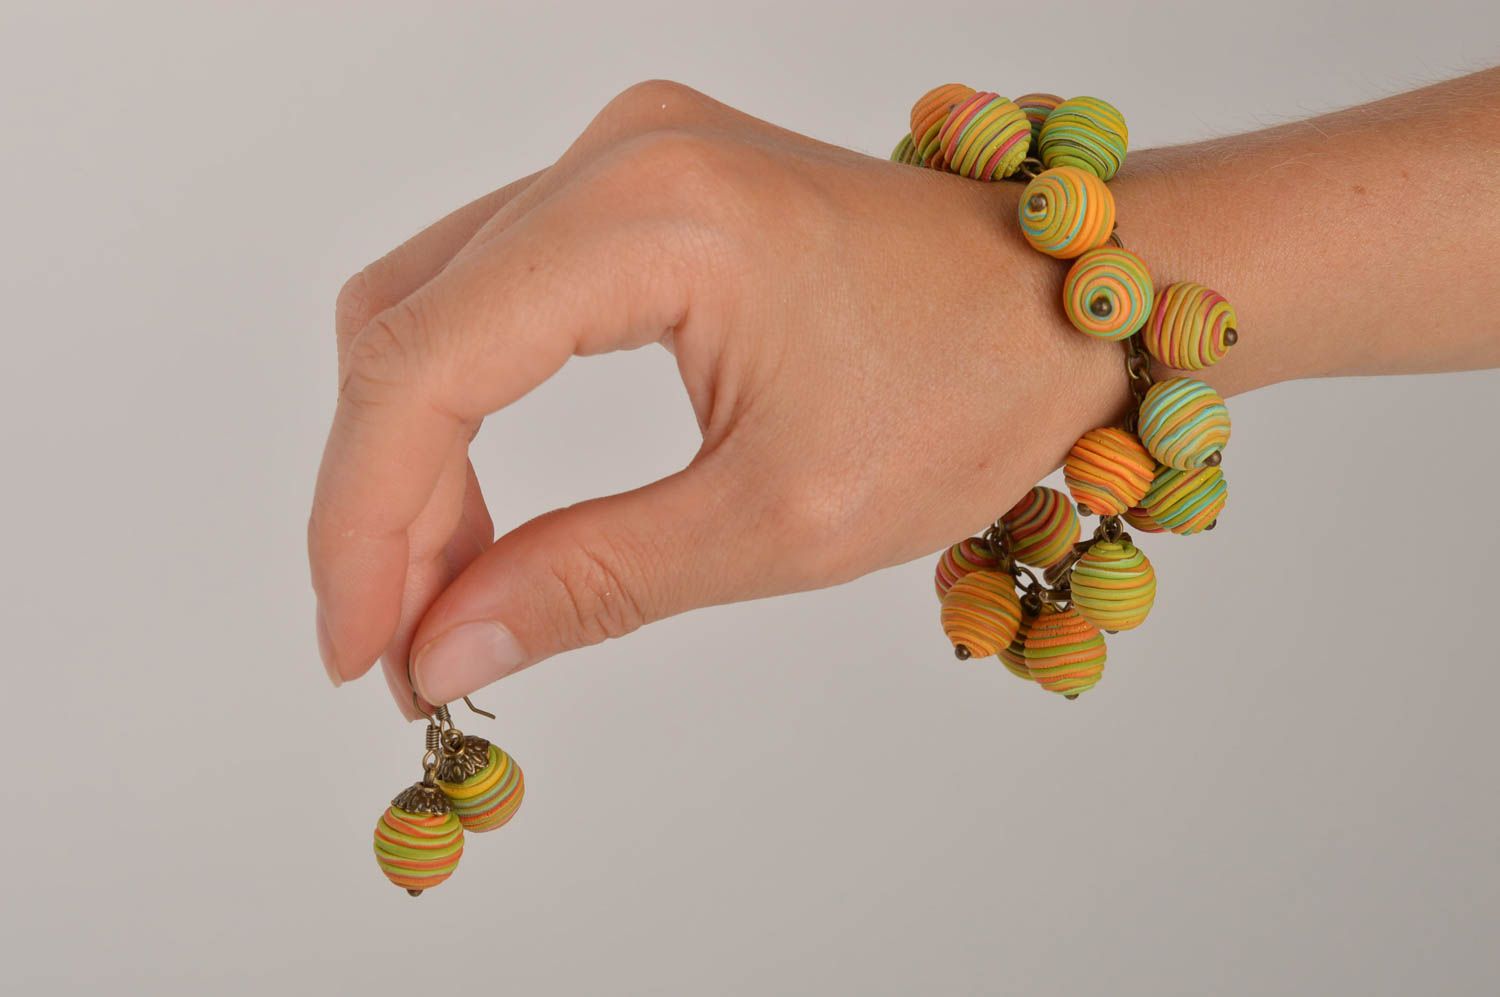 Wrist bracelet fashion earrings polymer clay jewelry with beads women jewelry  photo 2